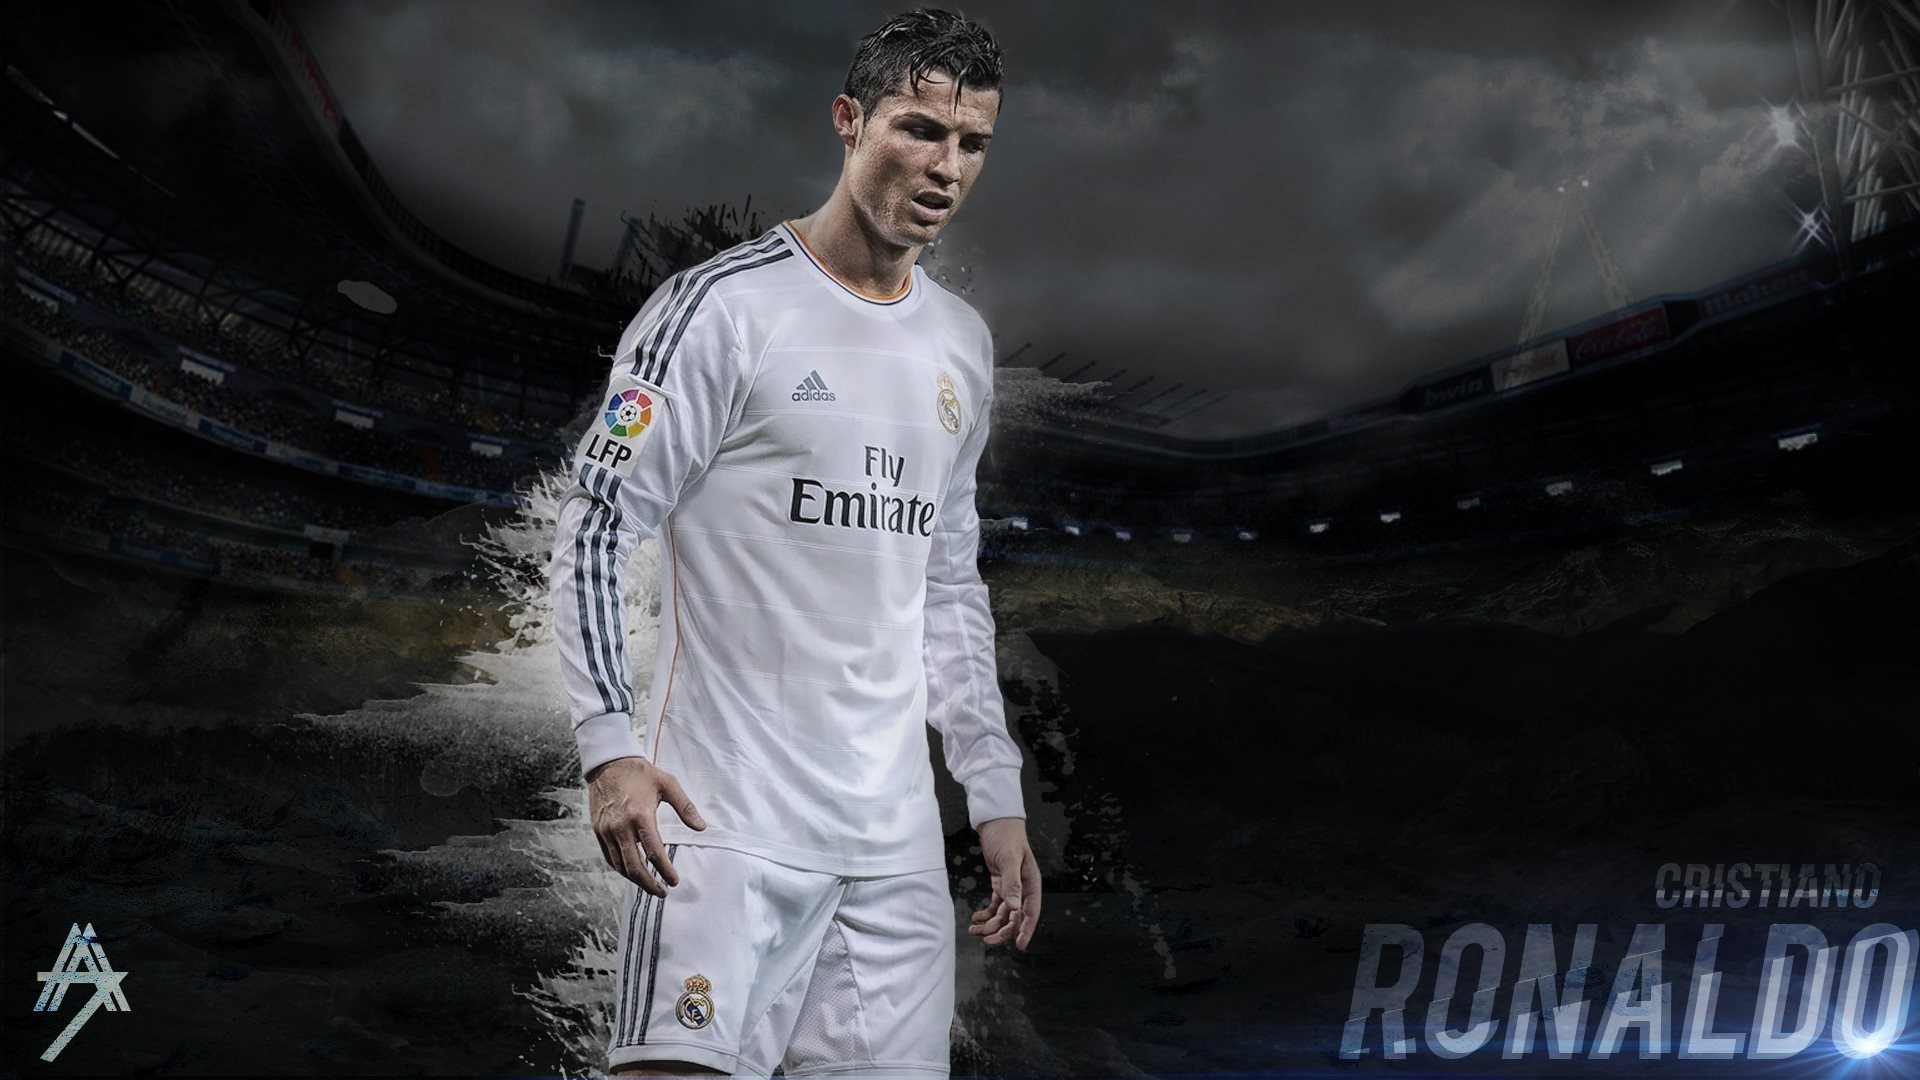 Cristiano Ronaldo Black and White 320 x 480 iPhone Wallpaper